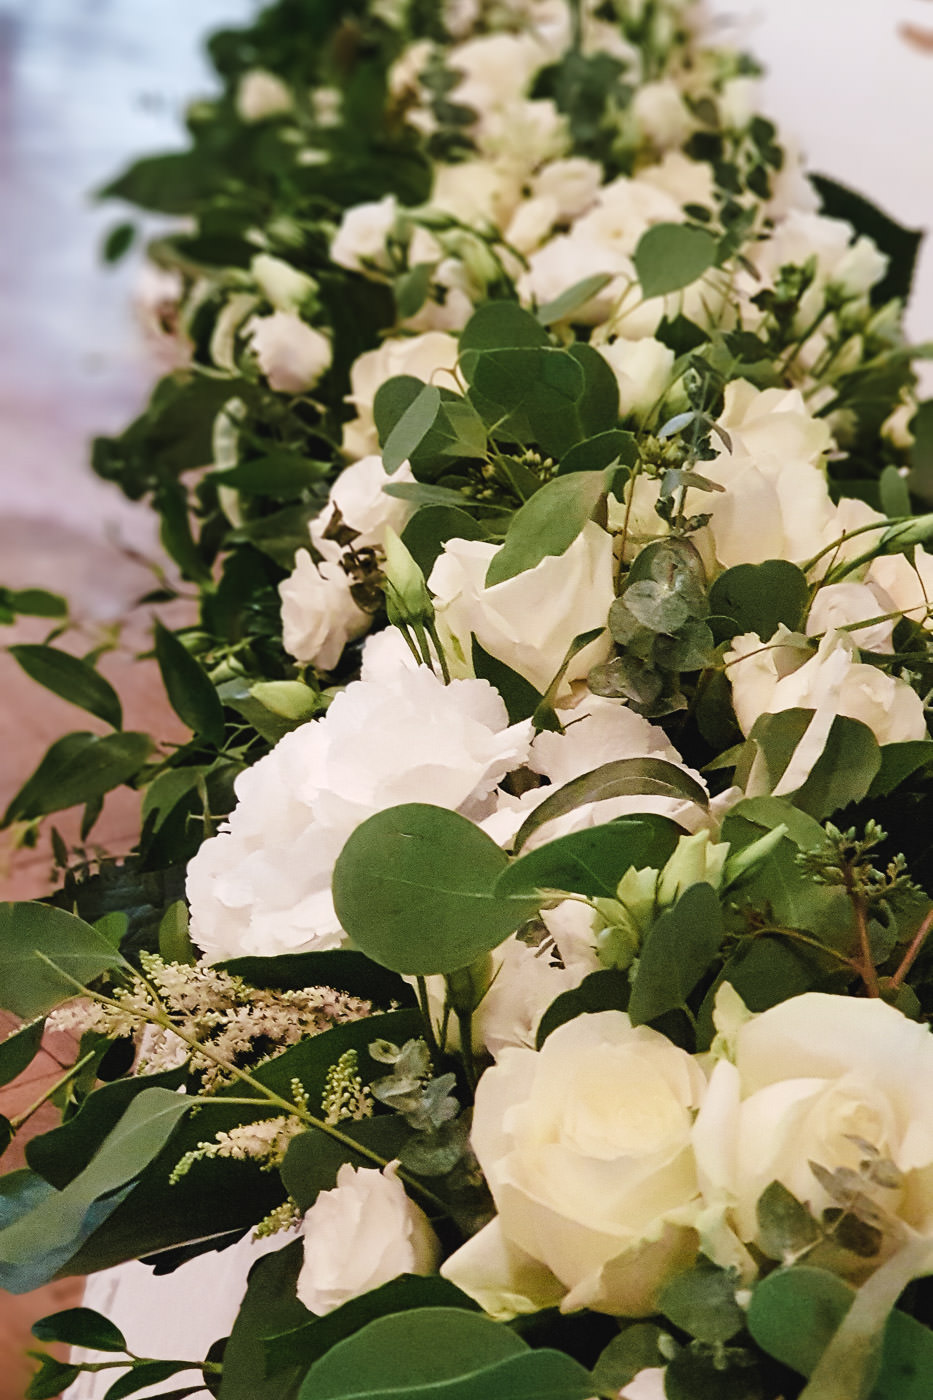 Susan&Sis decor svadobna vyzdoba – dekorovanie- white&green, greenery svadobna vyzdoba, bielo zelena svadba